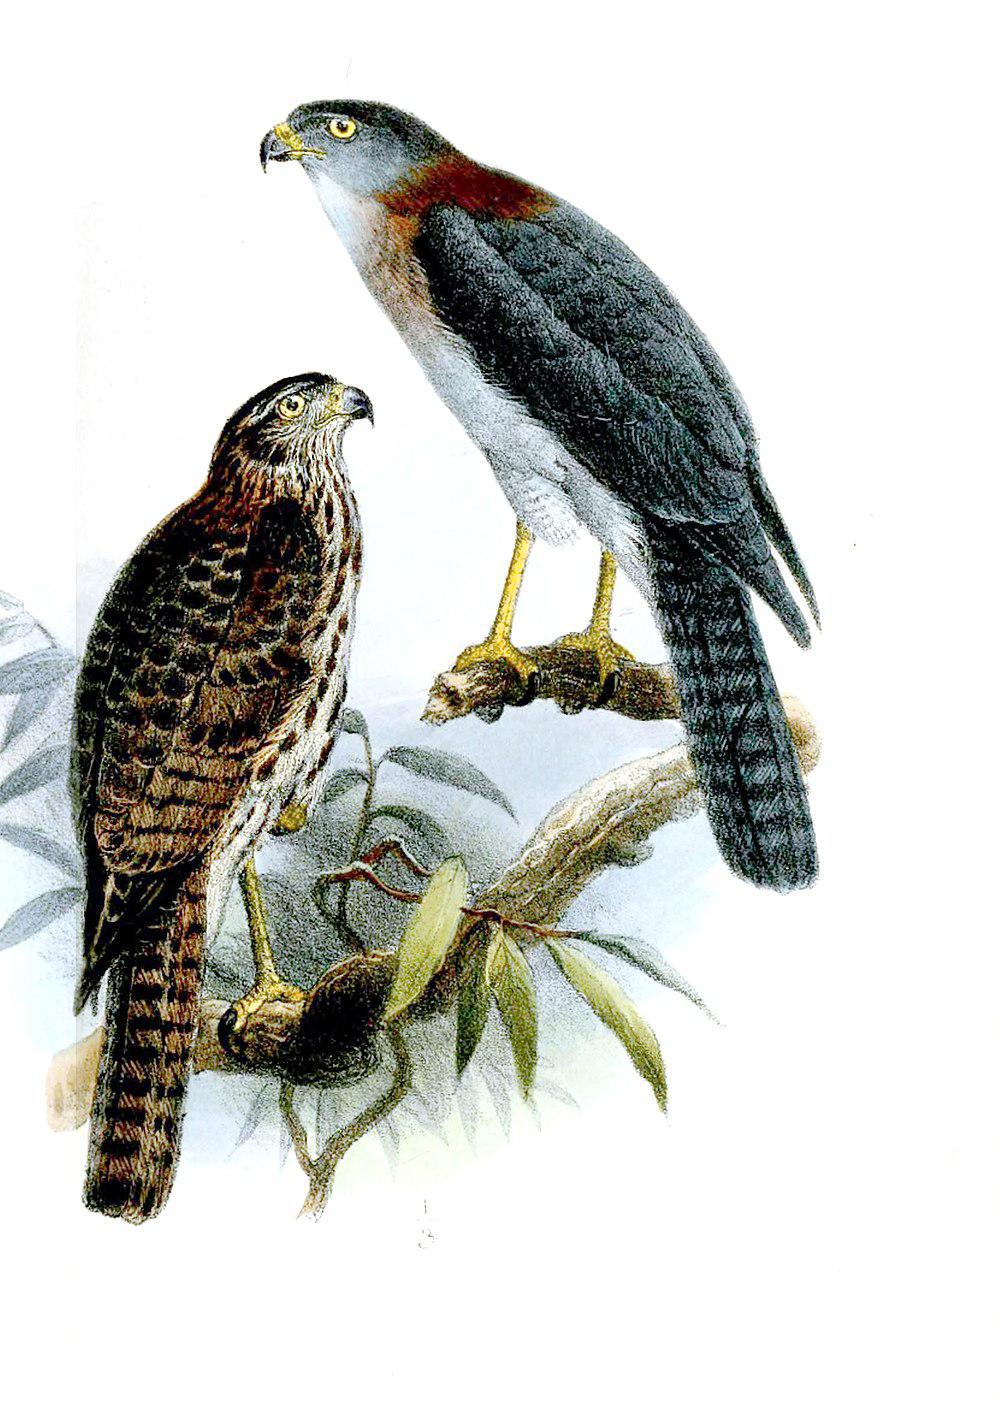 红颈雀鹰 / Rufous-necked Sparrowhawk / Accipiter erythrauchen